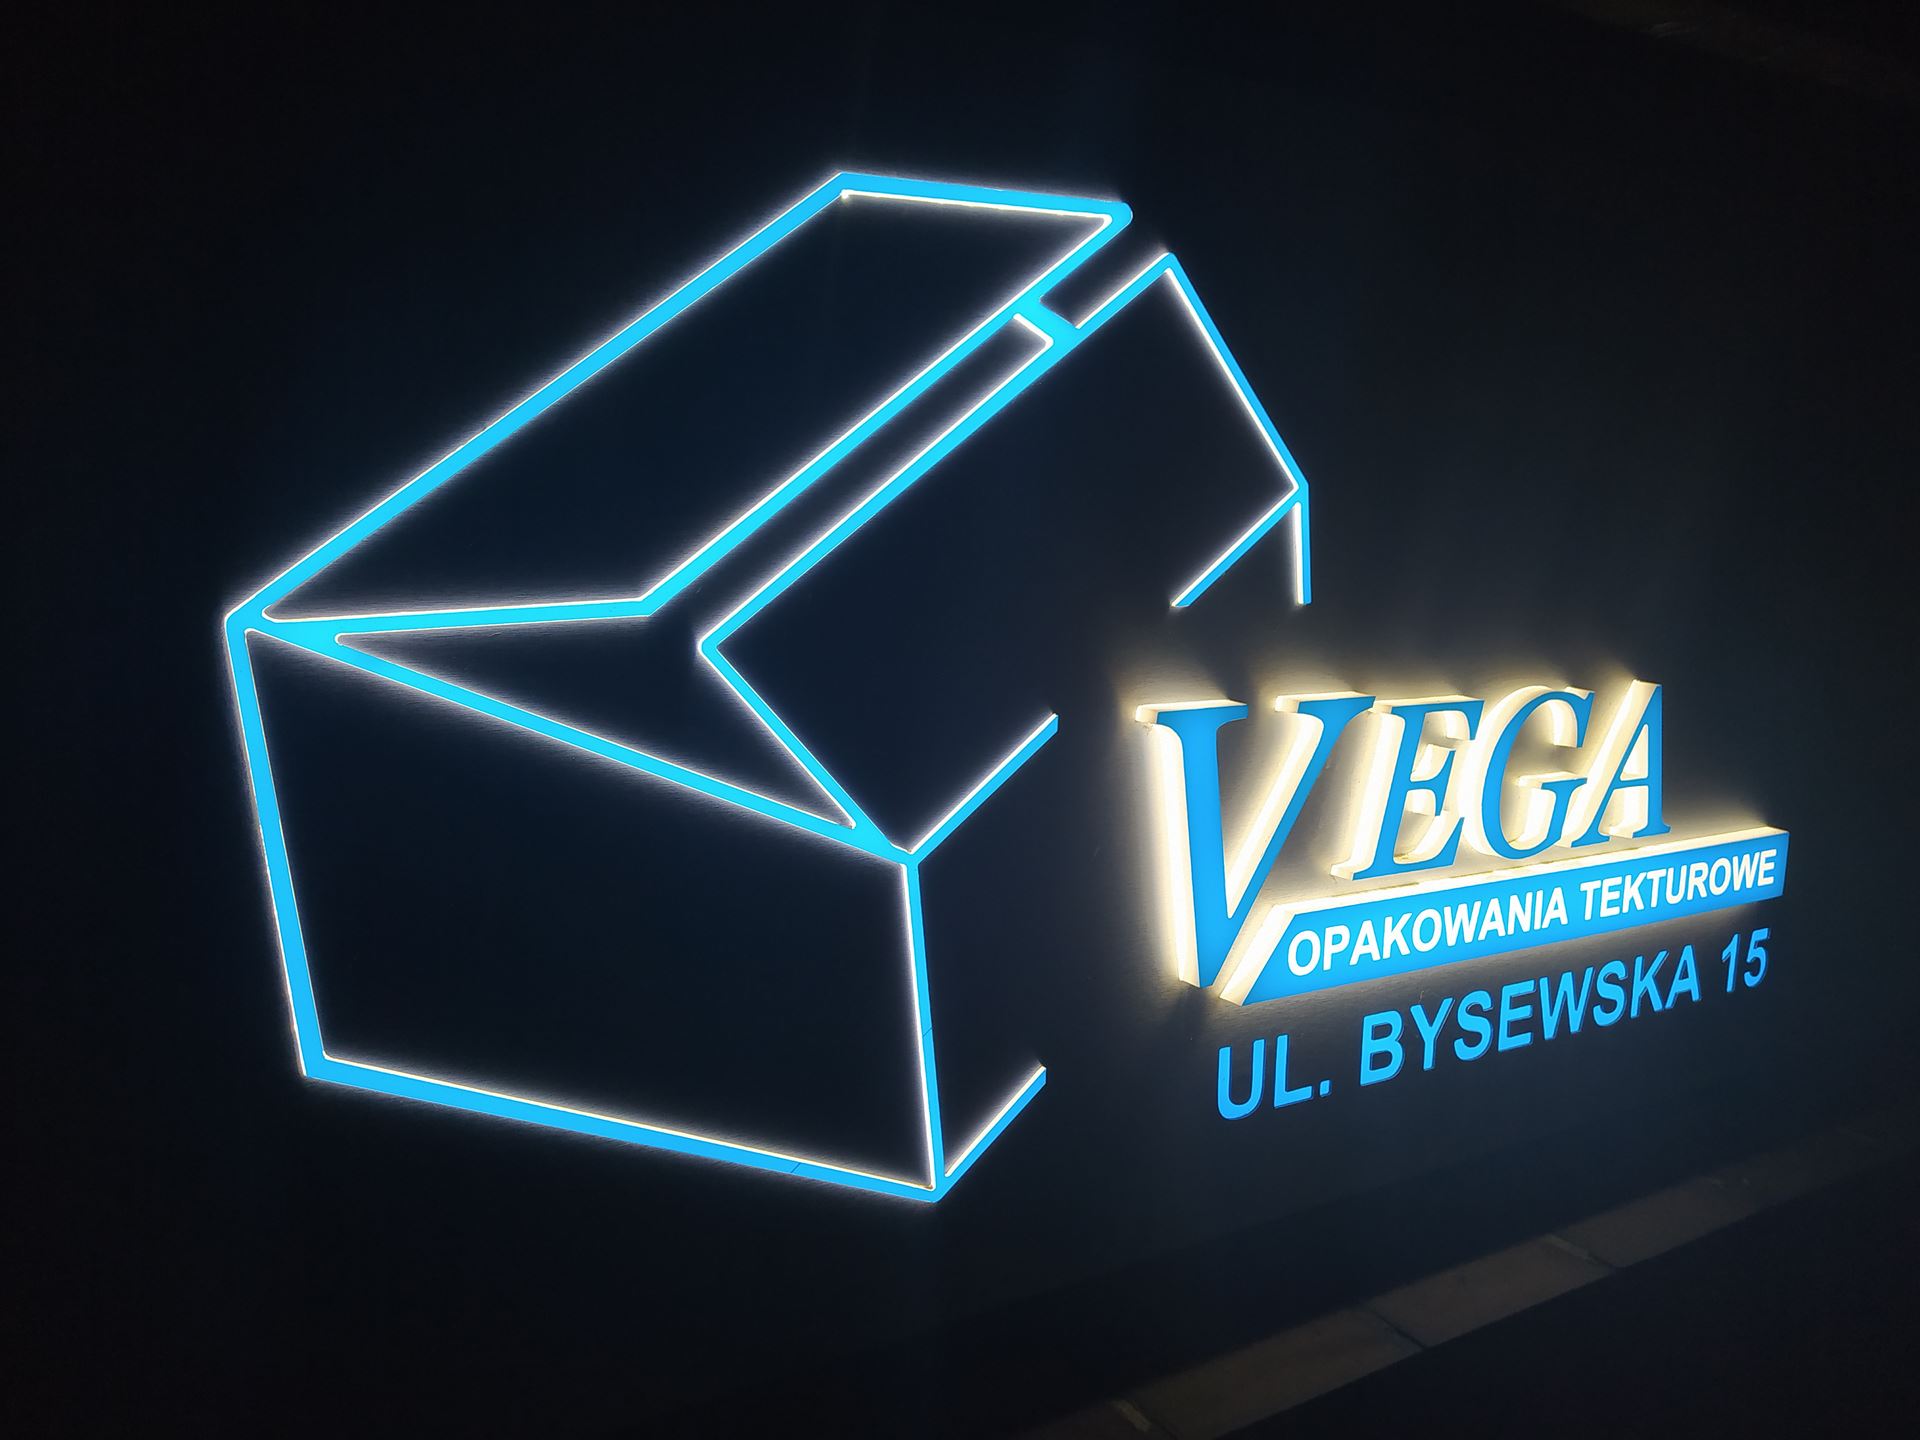 Oświetlenie reklamowe firmy Vega